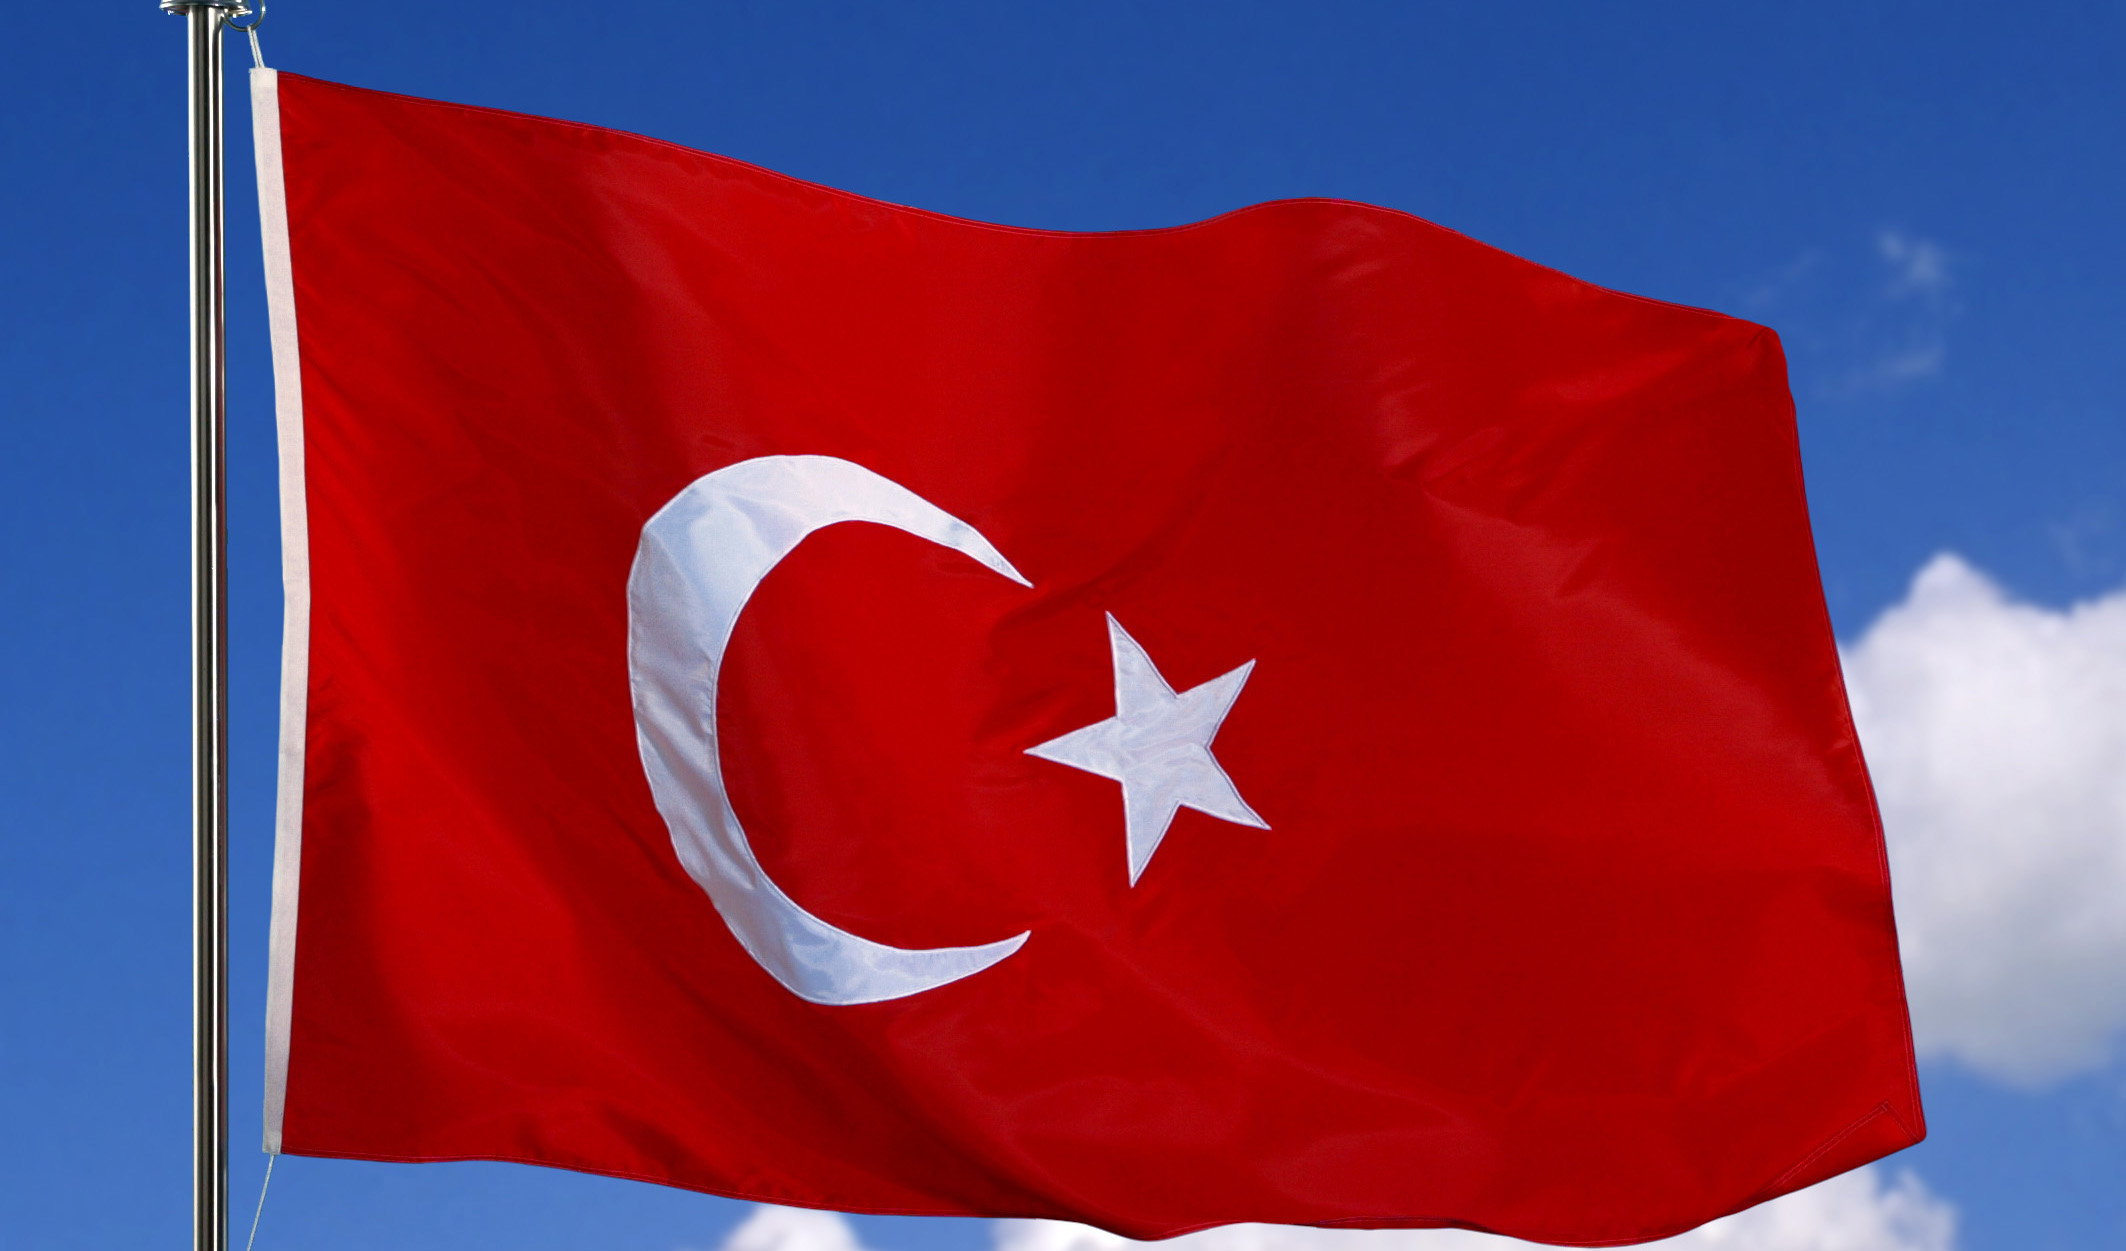 واردات نفت ترکیه ۱۸.۱ درصد کاهش یافت